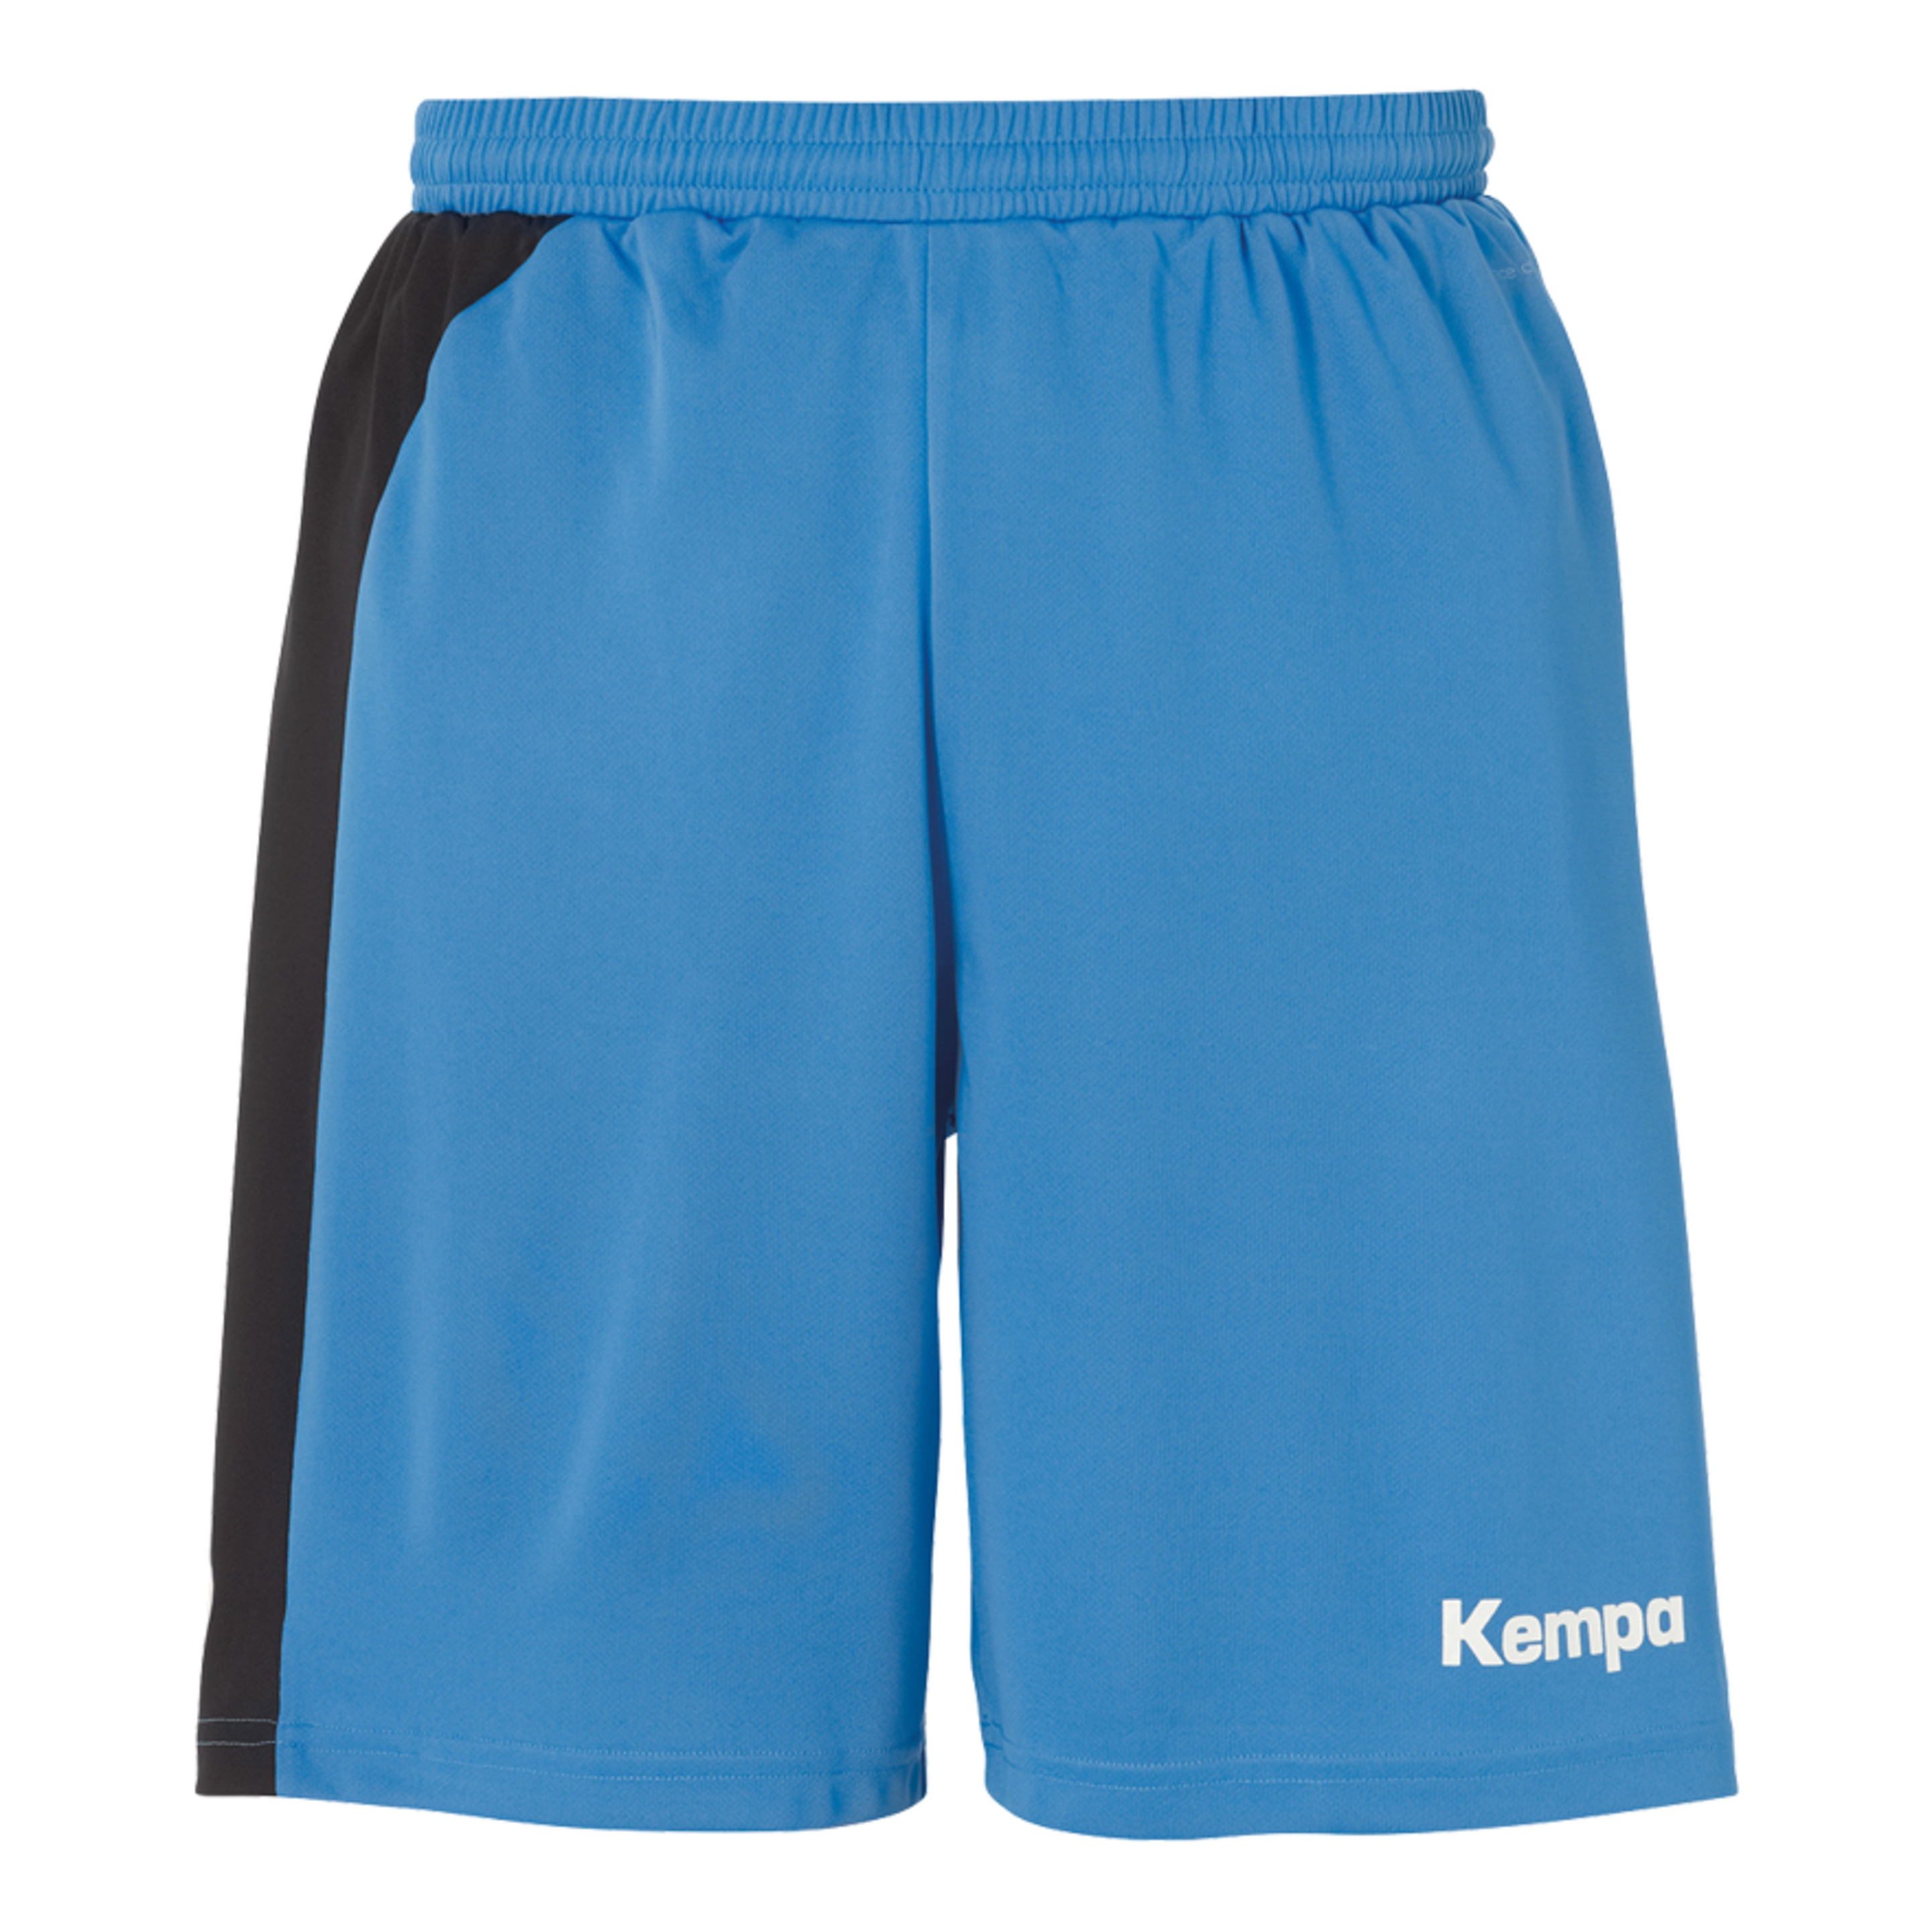 Peak Shorts Kempa Azul/negro Kempa - azul - Peak Shorts Kempa Azul/negro Kempa  MKP